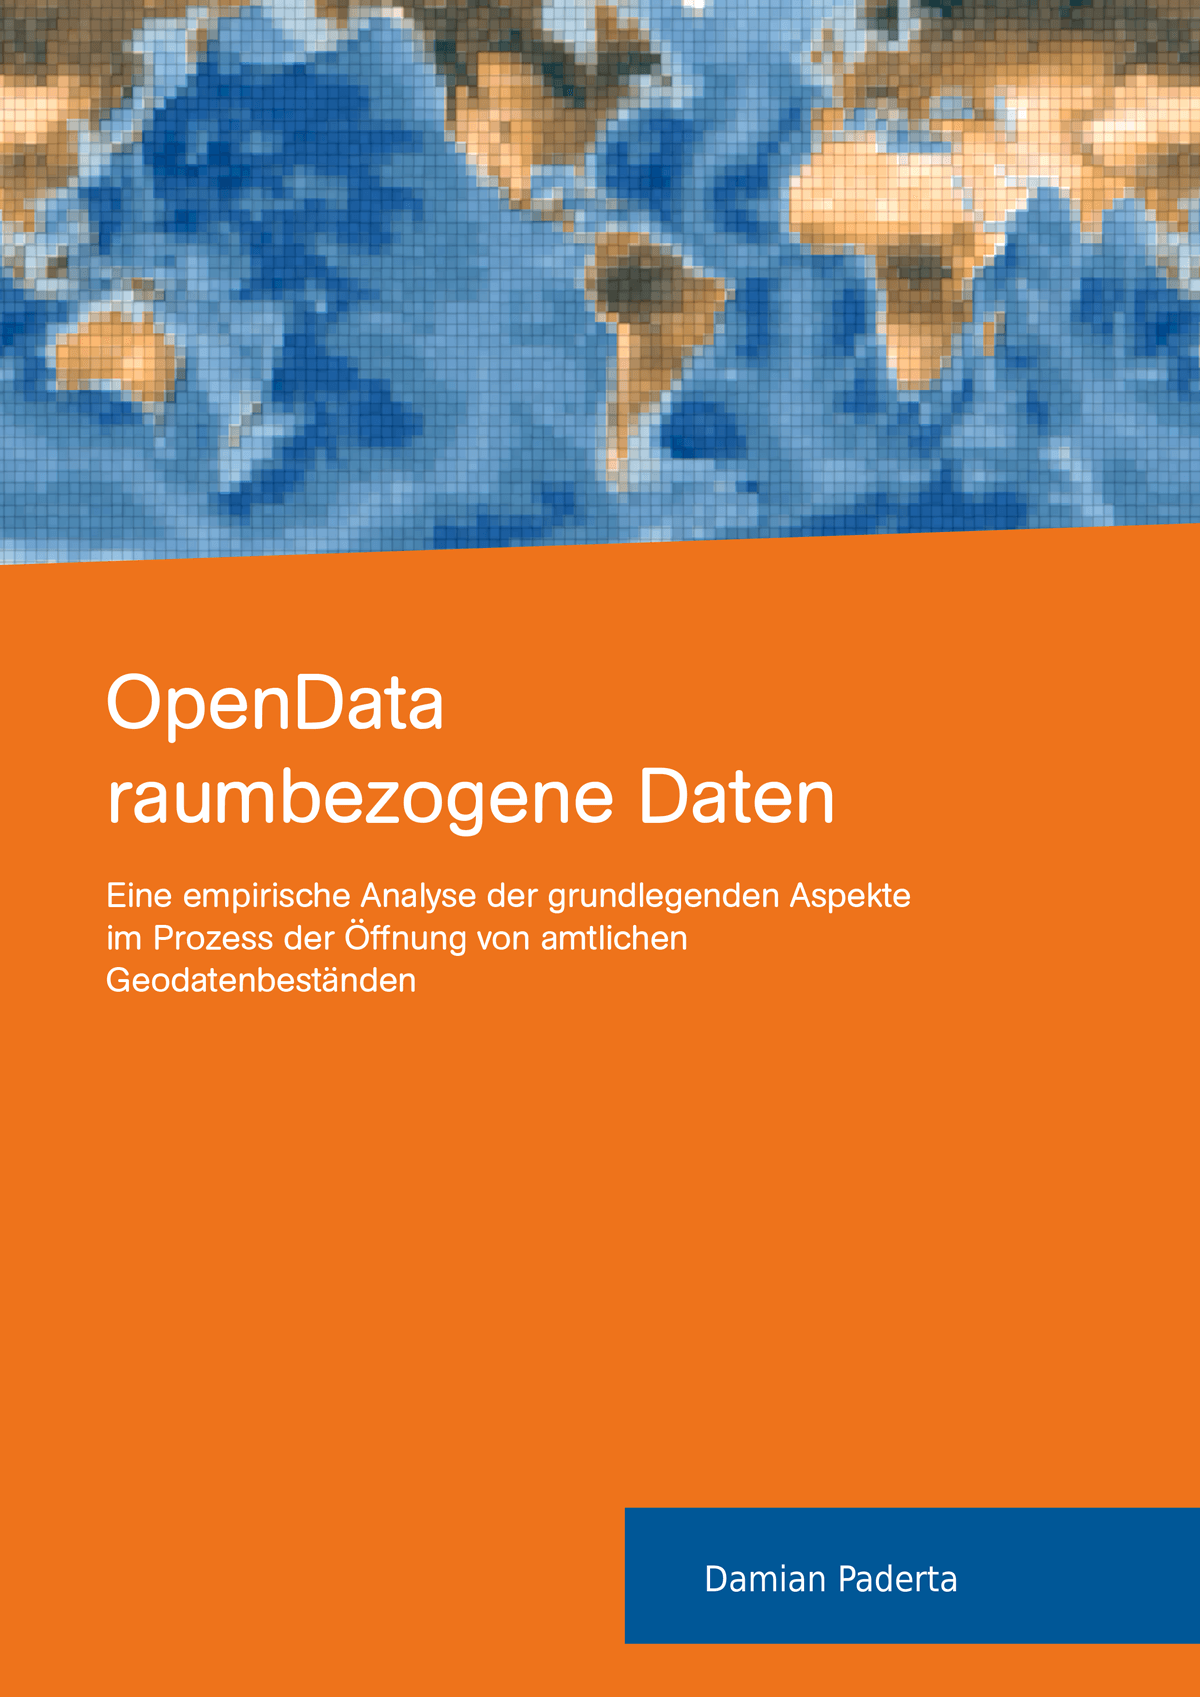 open data - raumbezogene Daten